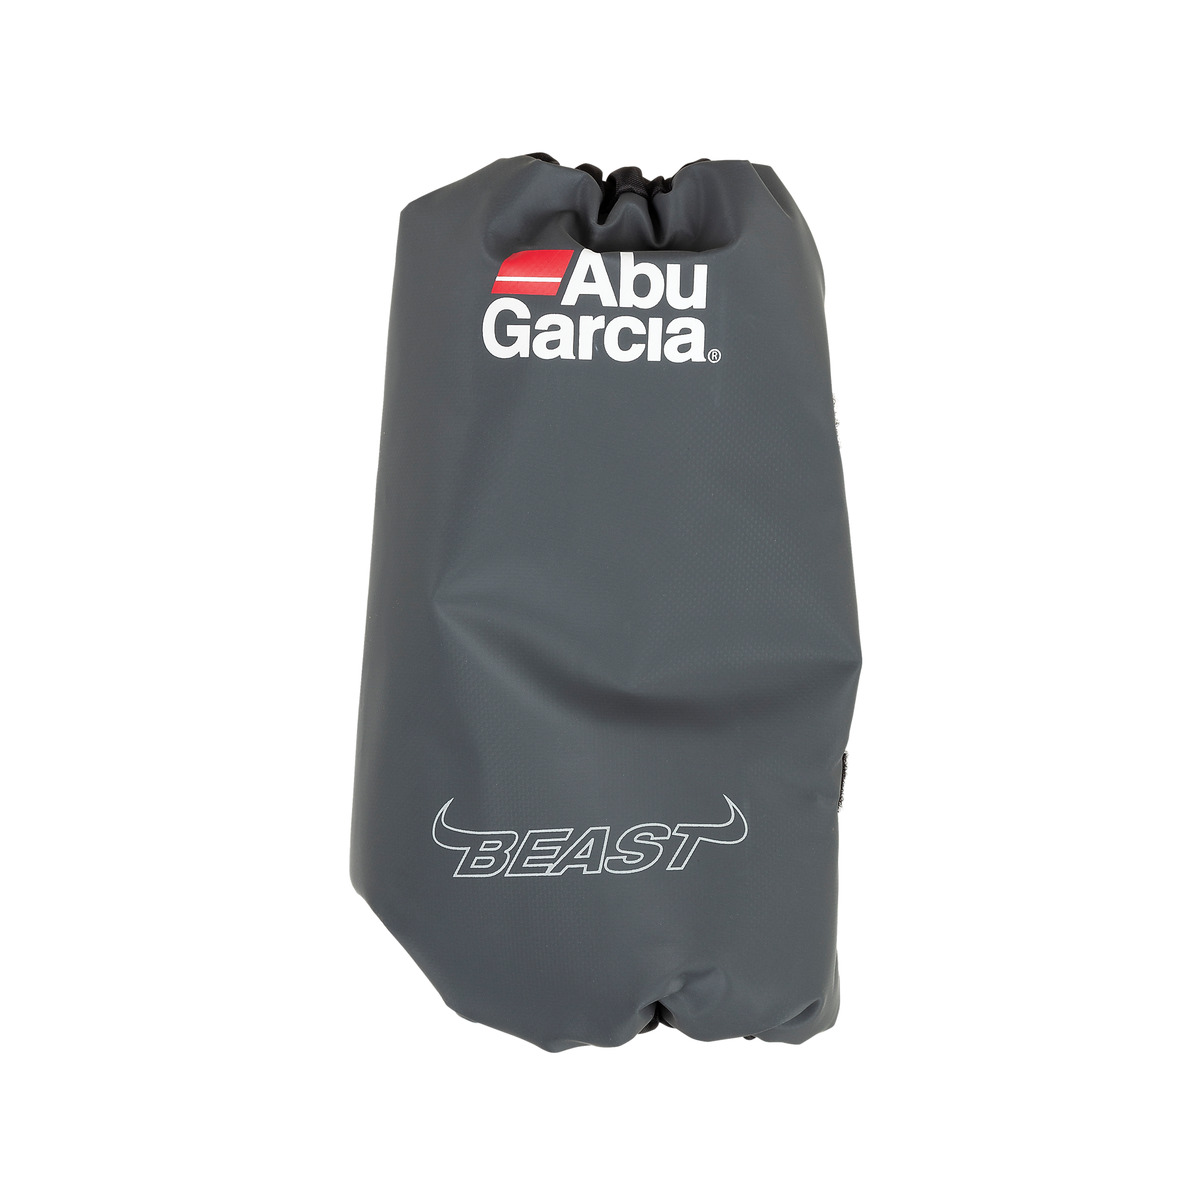 Abu Garcia Beast Pro Boat Bag - Grey